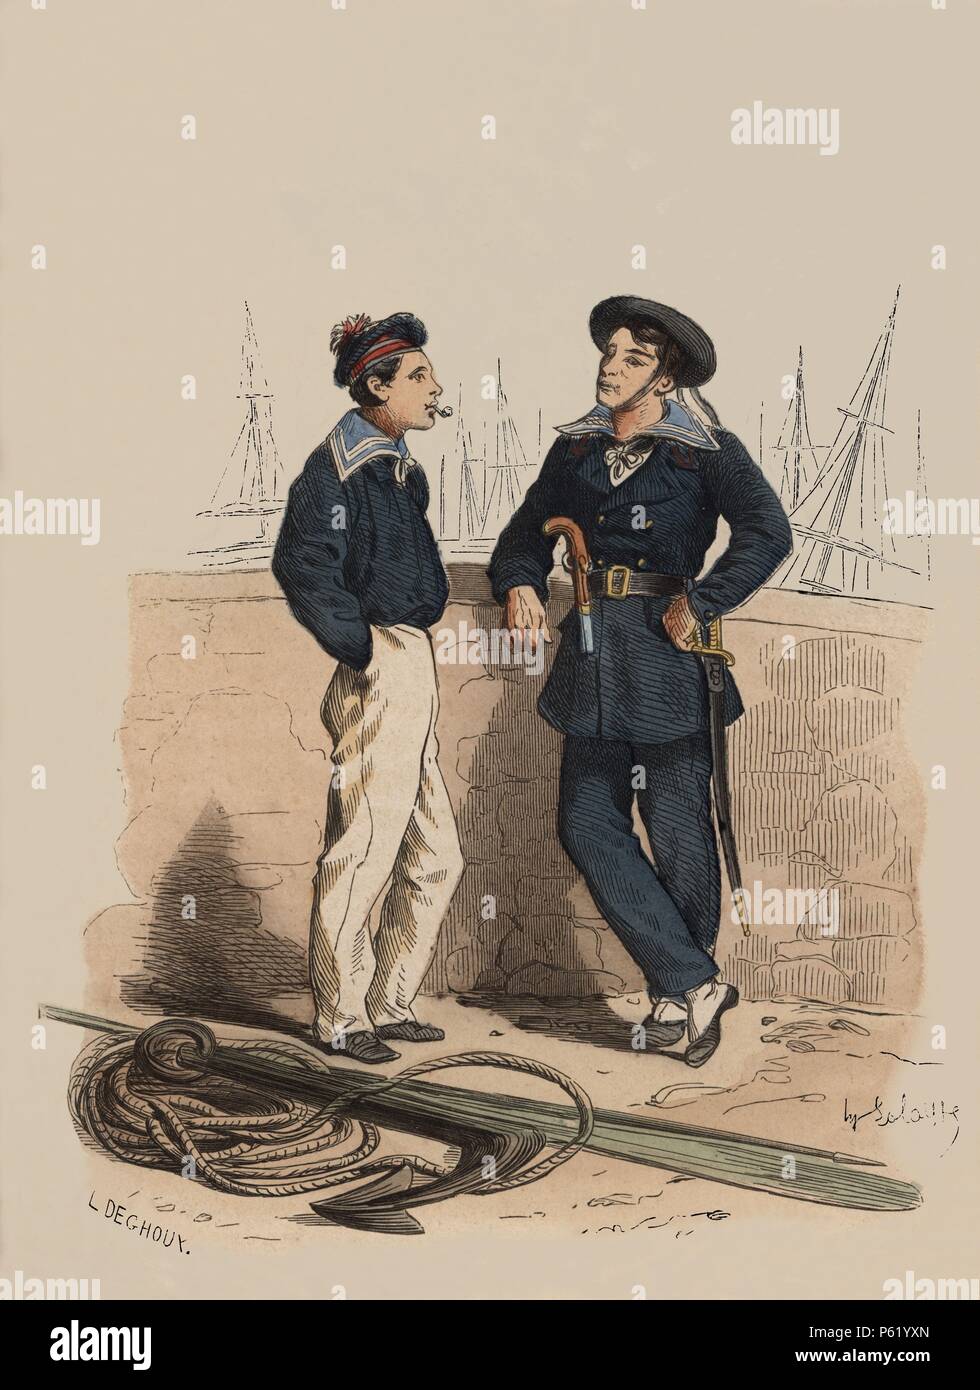 Francia. Siglo XIX. Uniforme de Marineros, año 1857. Grabado de 1864. Stock Photo